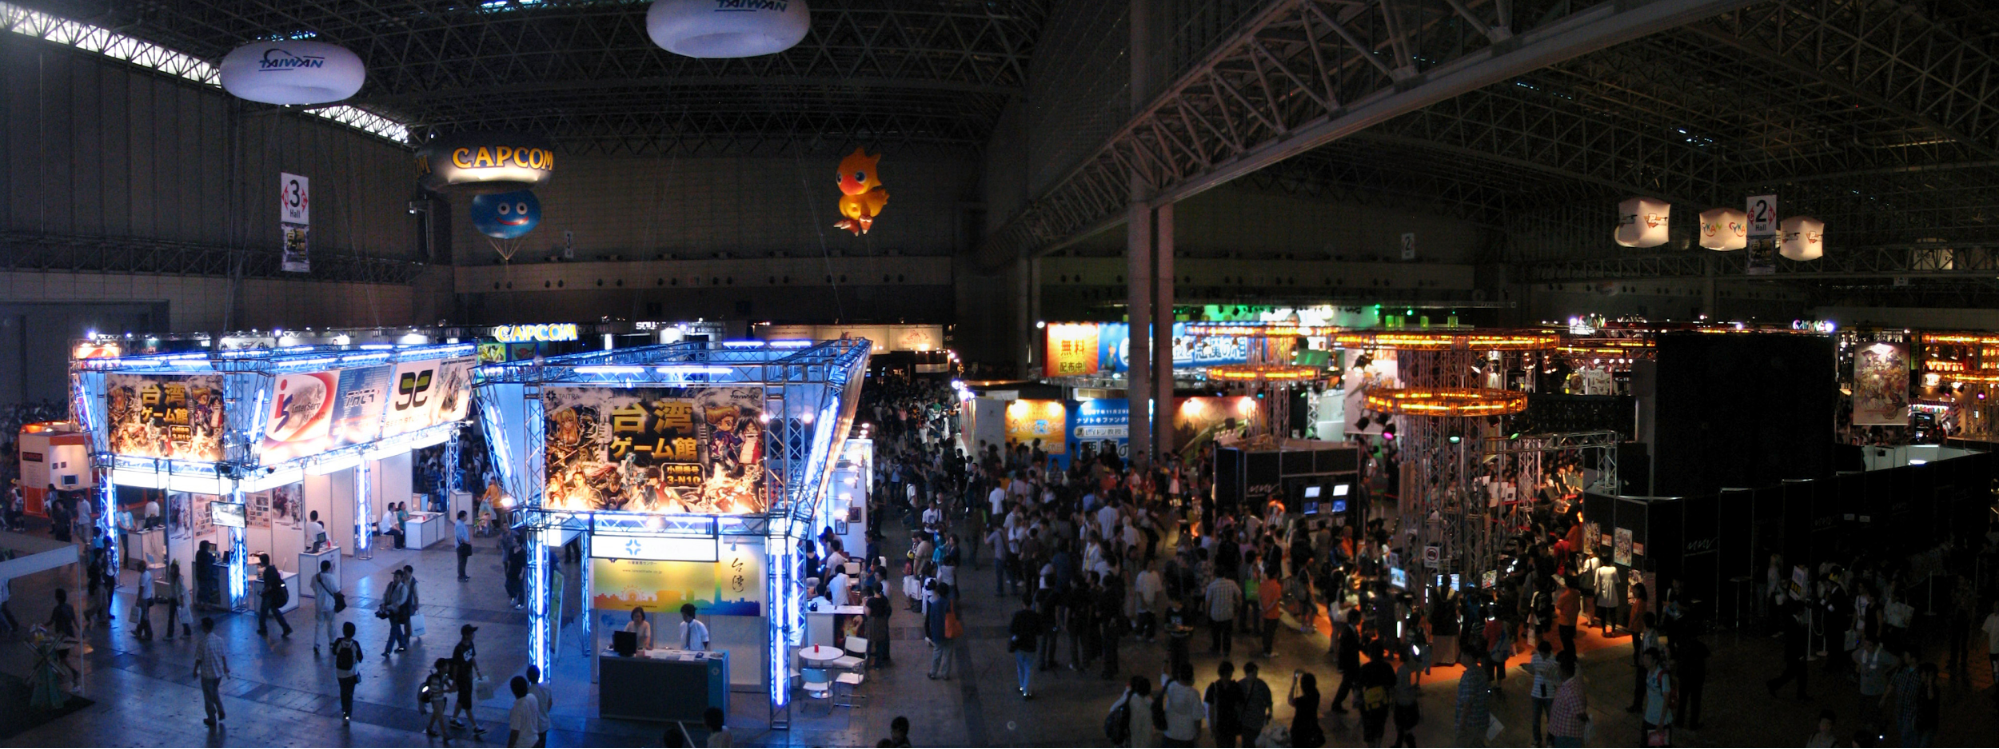 Tokyo Game Show Floor